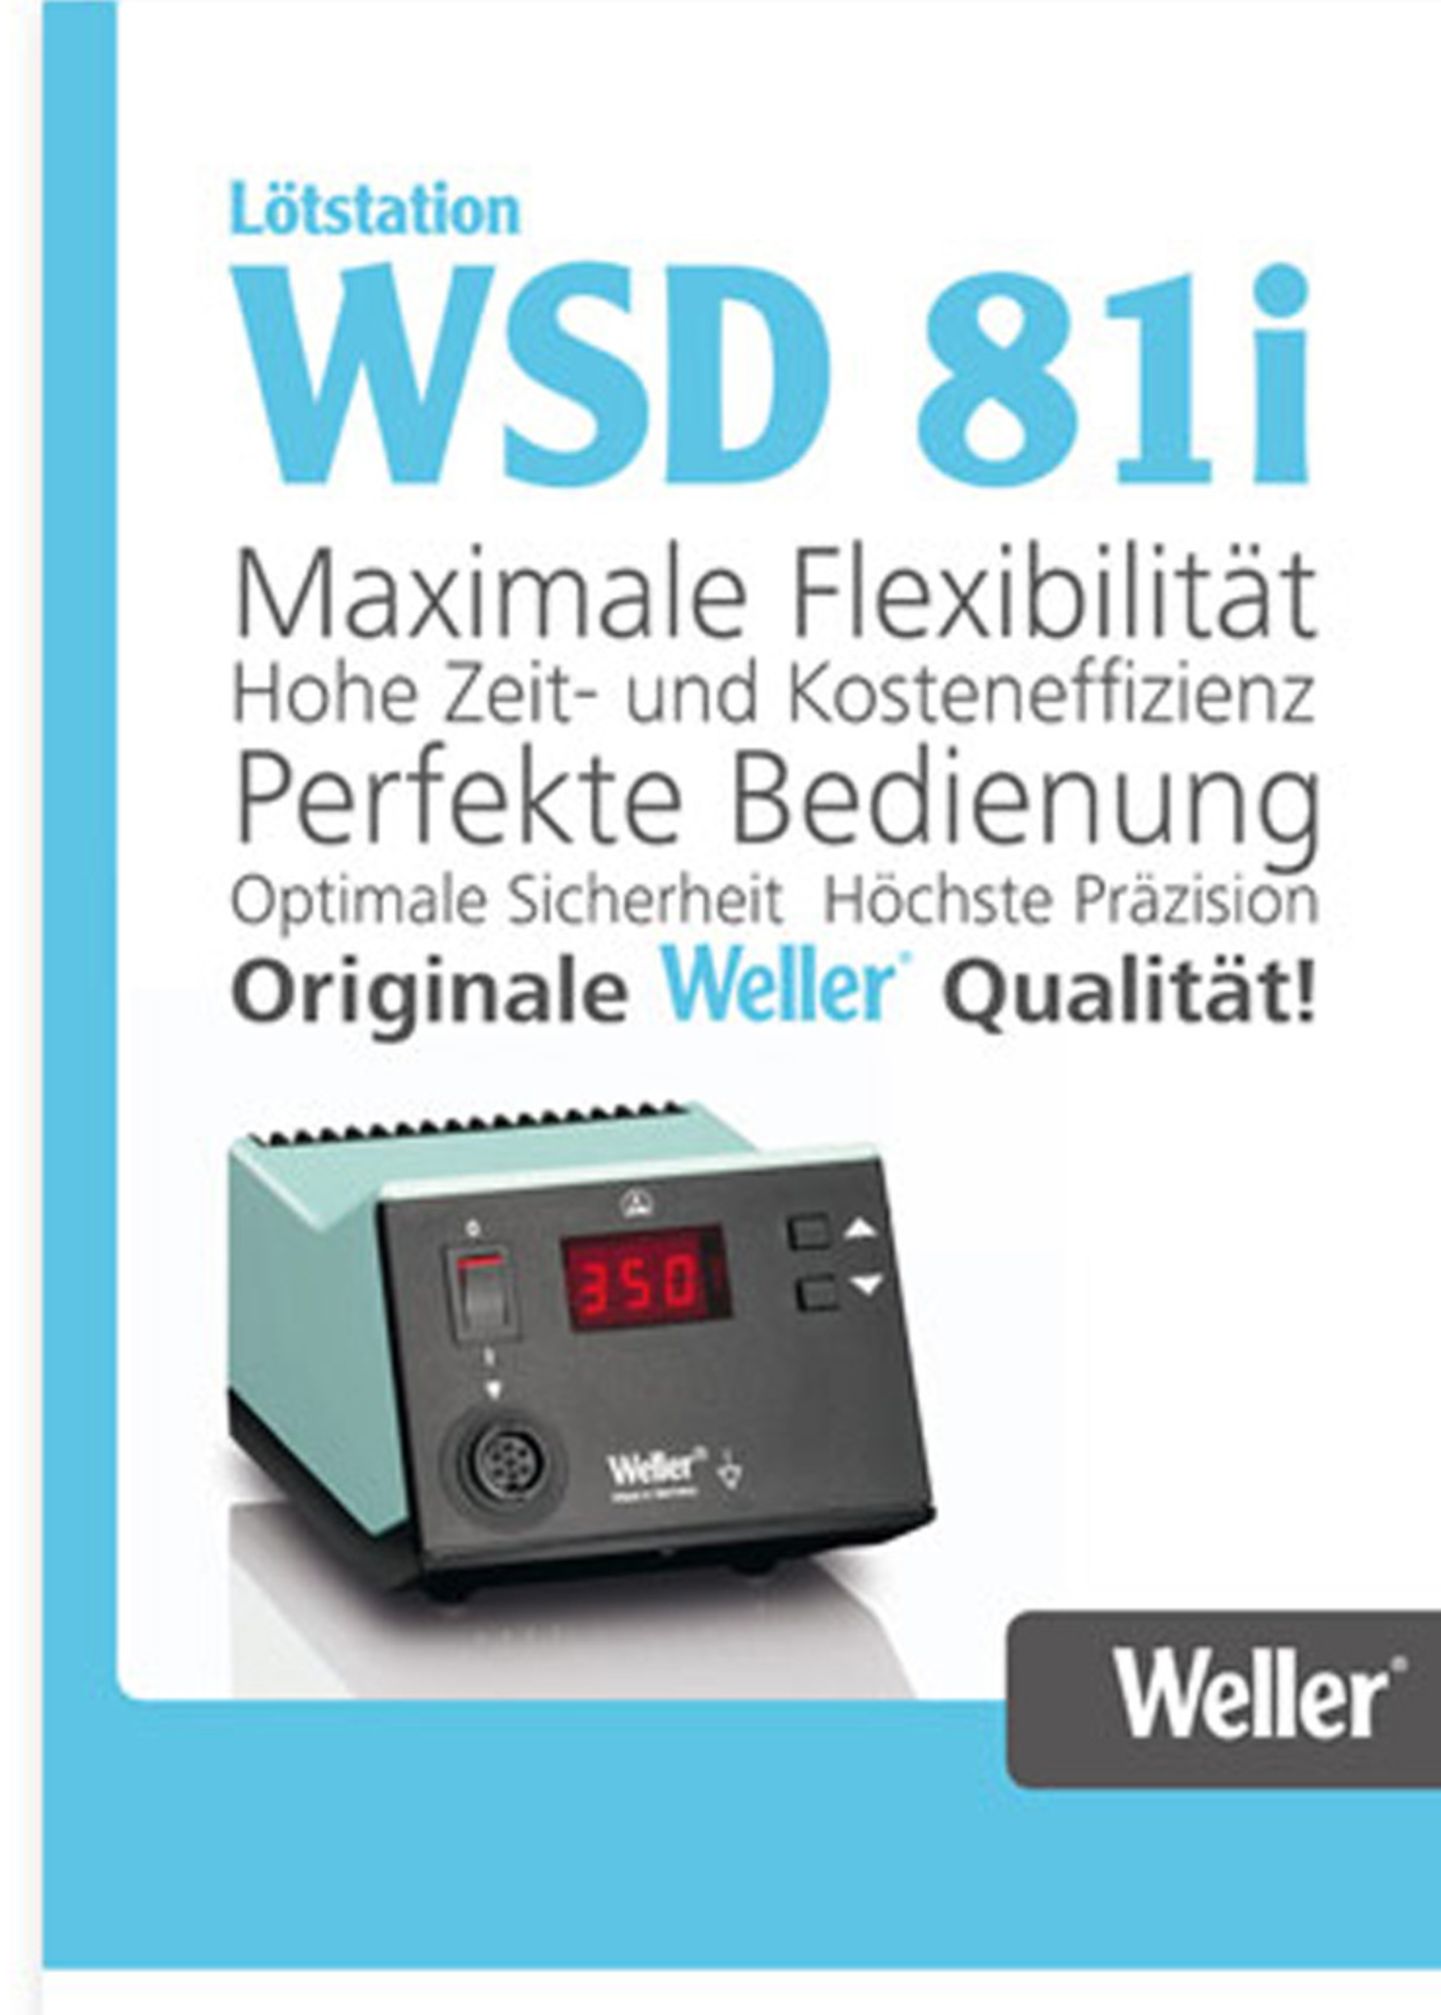 Weller-WSD-81i